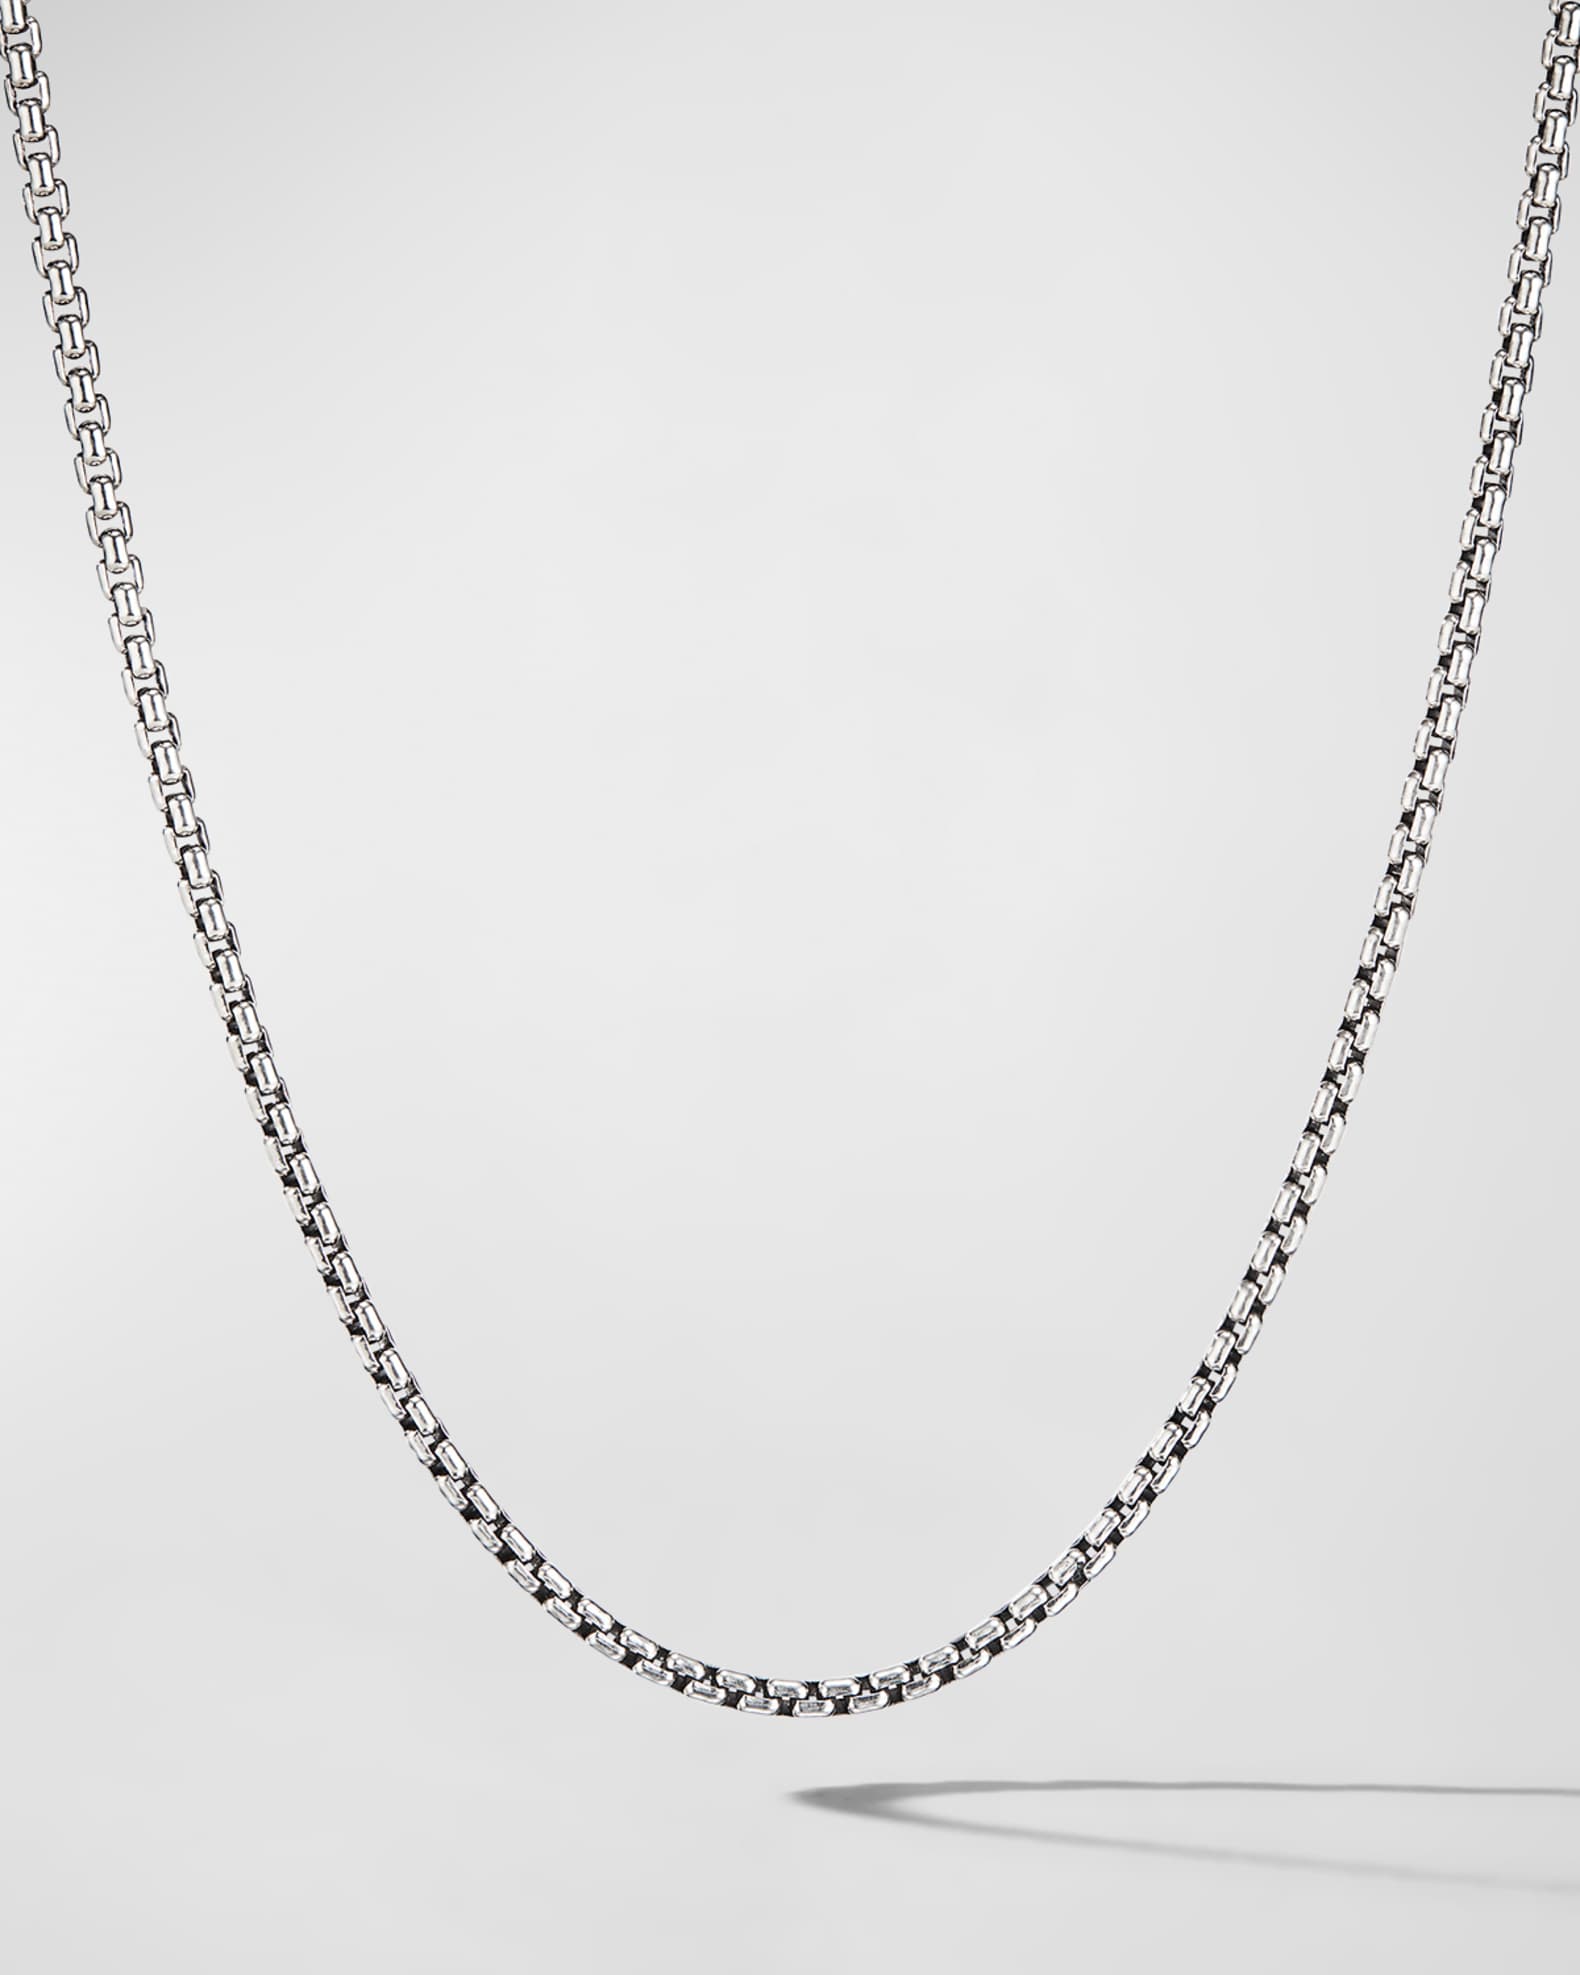 Men's Louis Vuitton Necklaces from $350